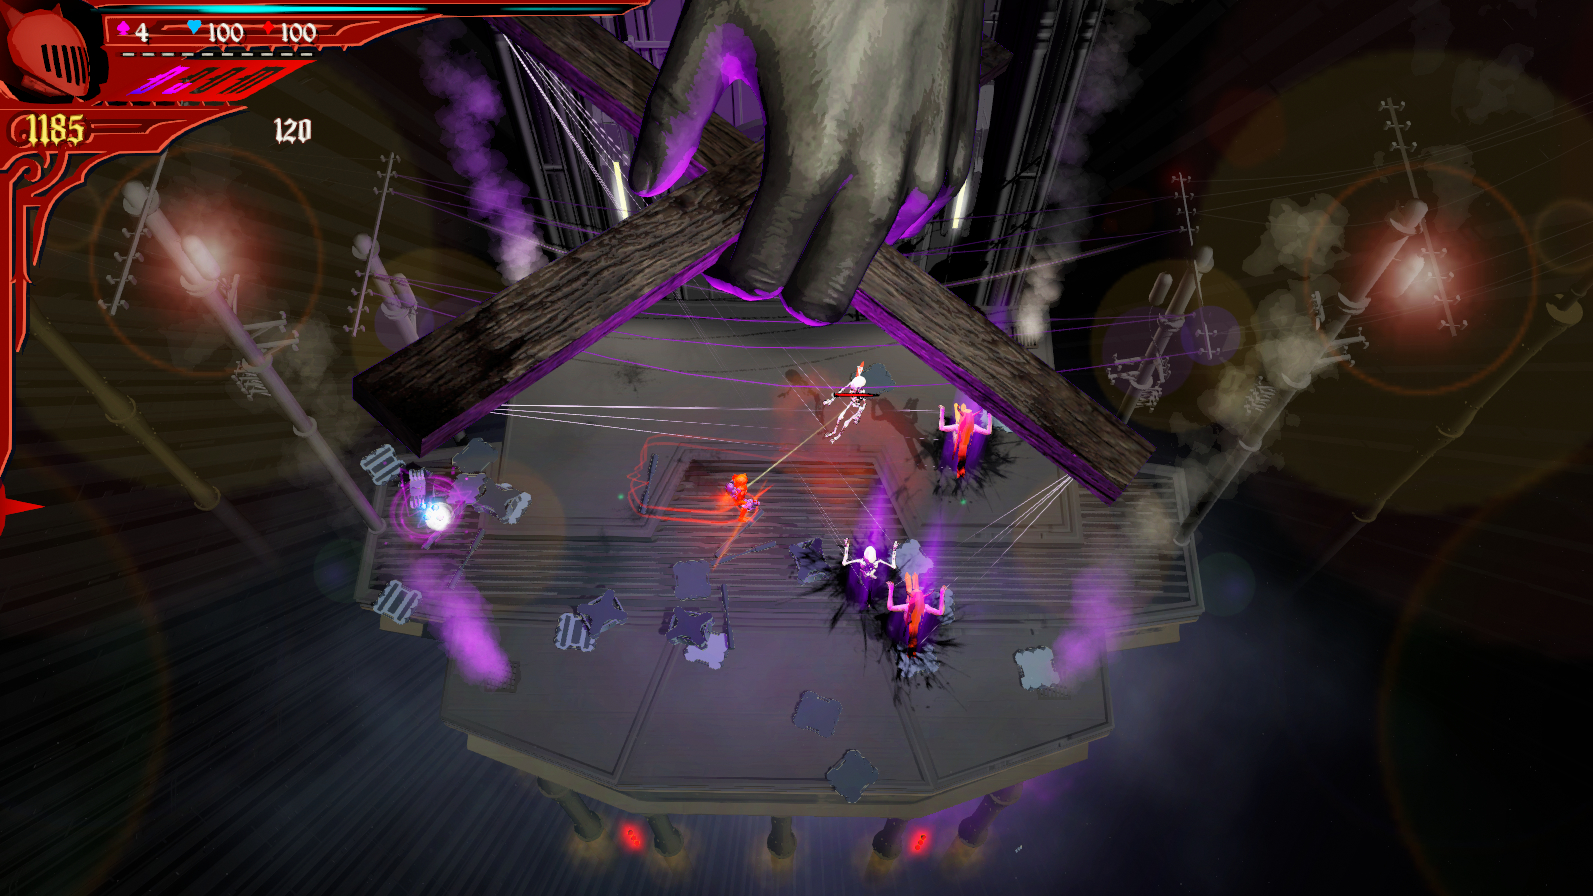 Theatre of Doom screenshot